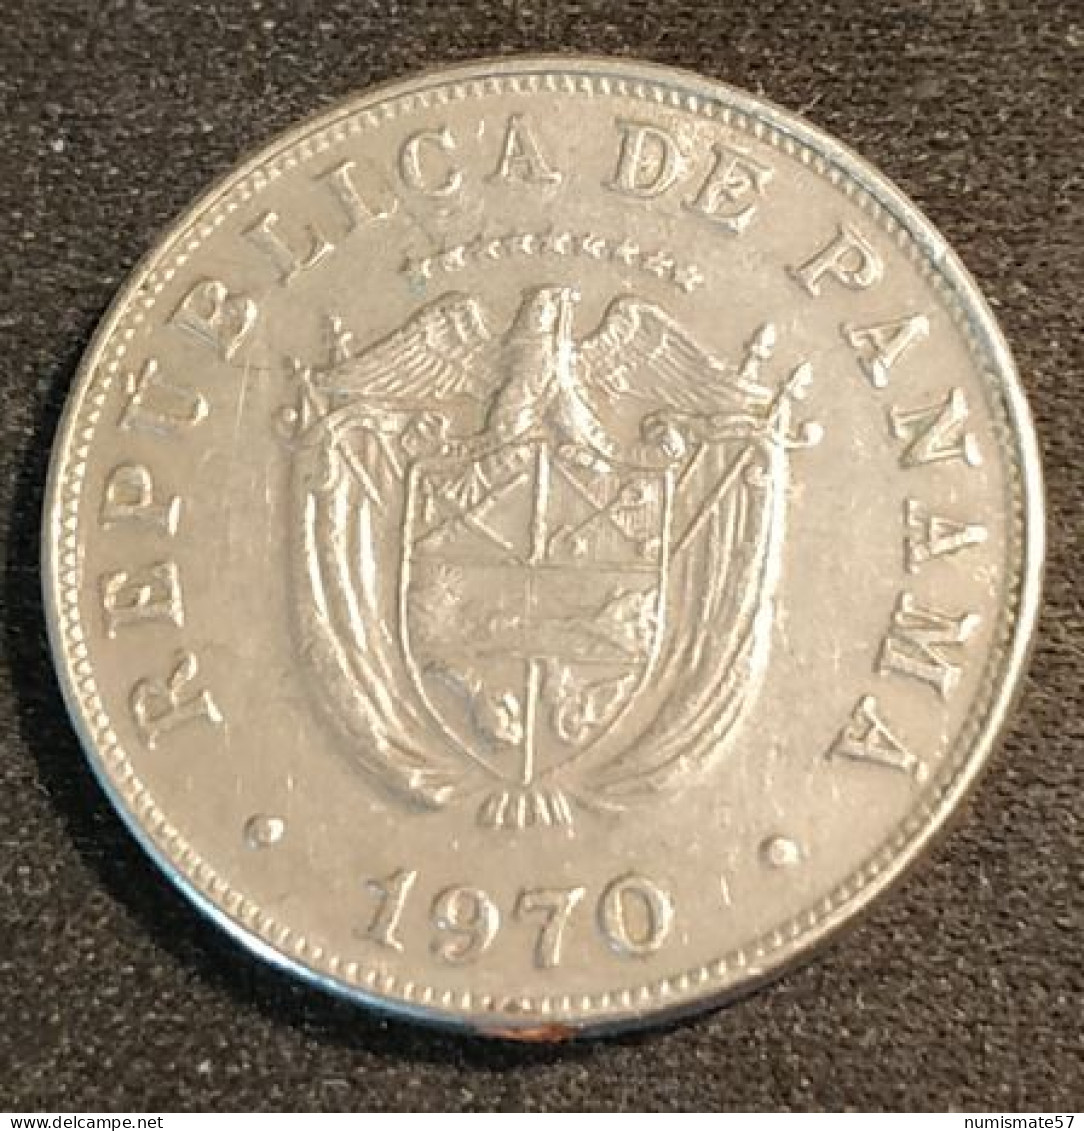 PANAMA - 5 CENTESIMOS 1970 - KM 23.2 - Panamá